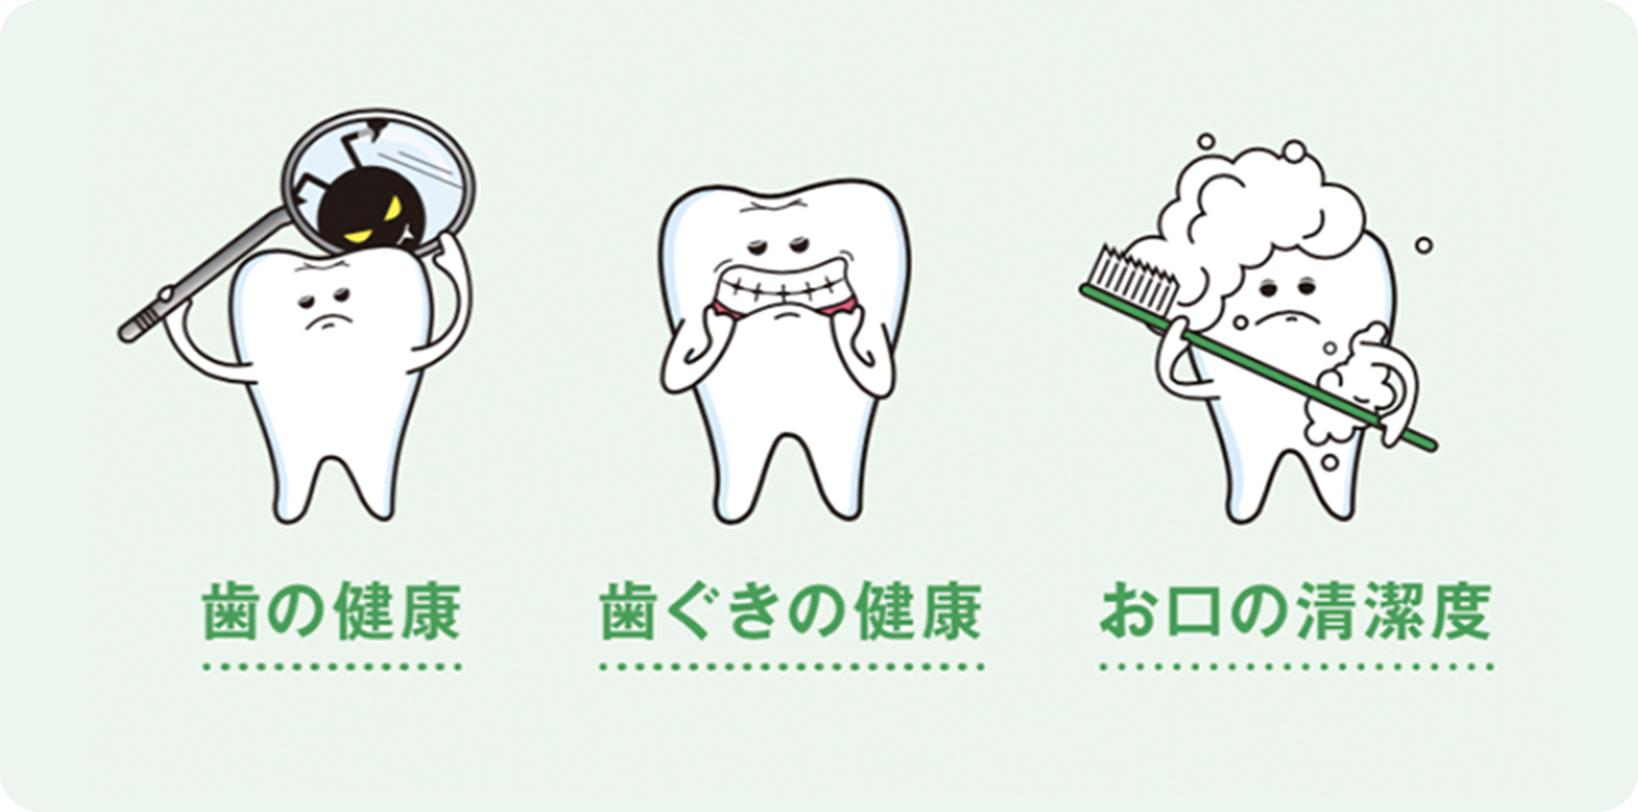 歯の健康、歯ぐきの健康、お口の清潔度